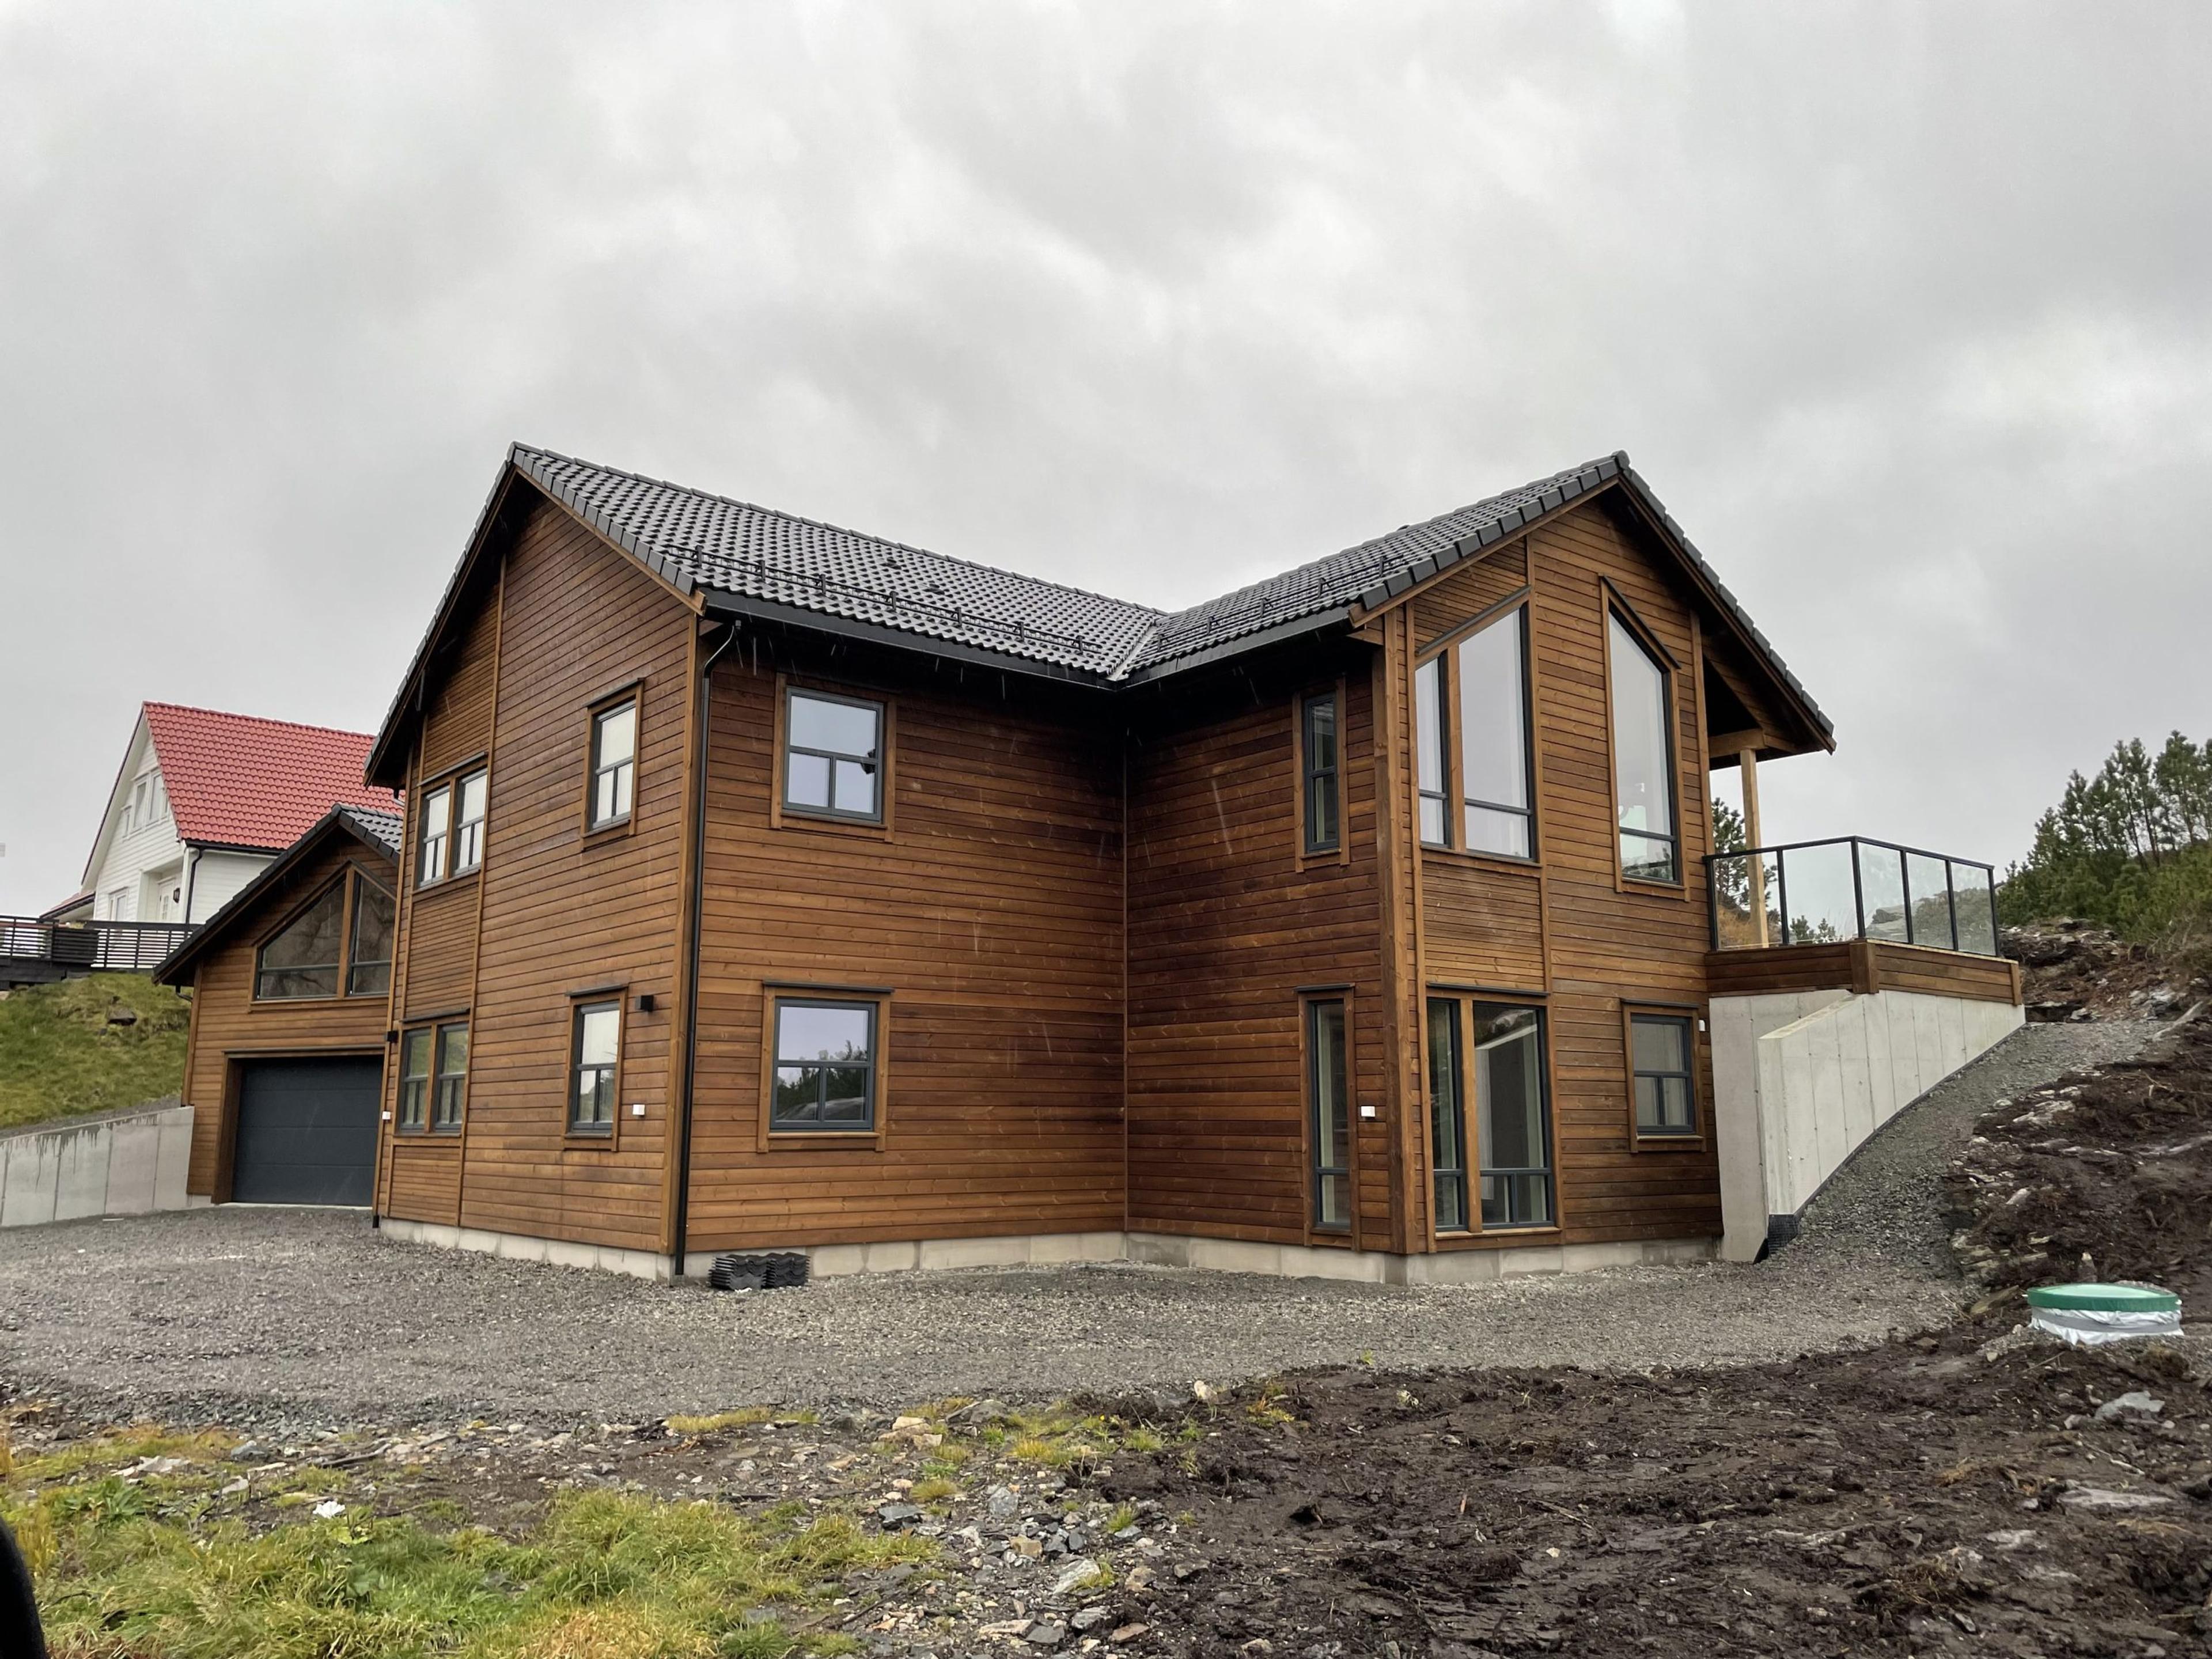 Tradisjonell enebolig med moderne preg og dobbel garasje på Turøy, bli med å se noen av fasene fra start til ferdig bolig.